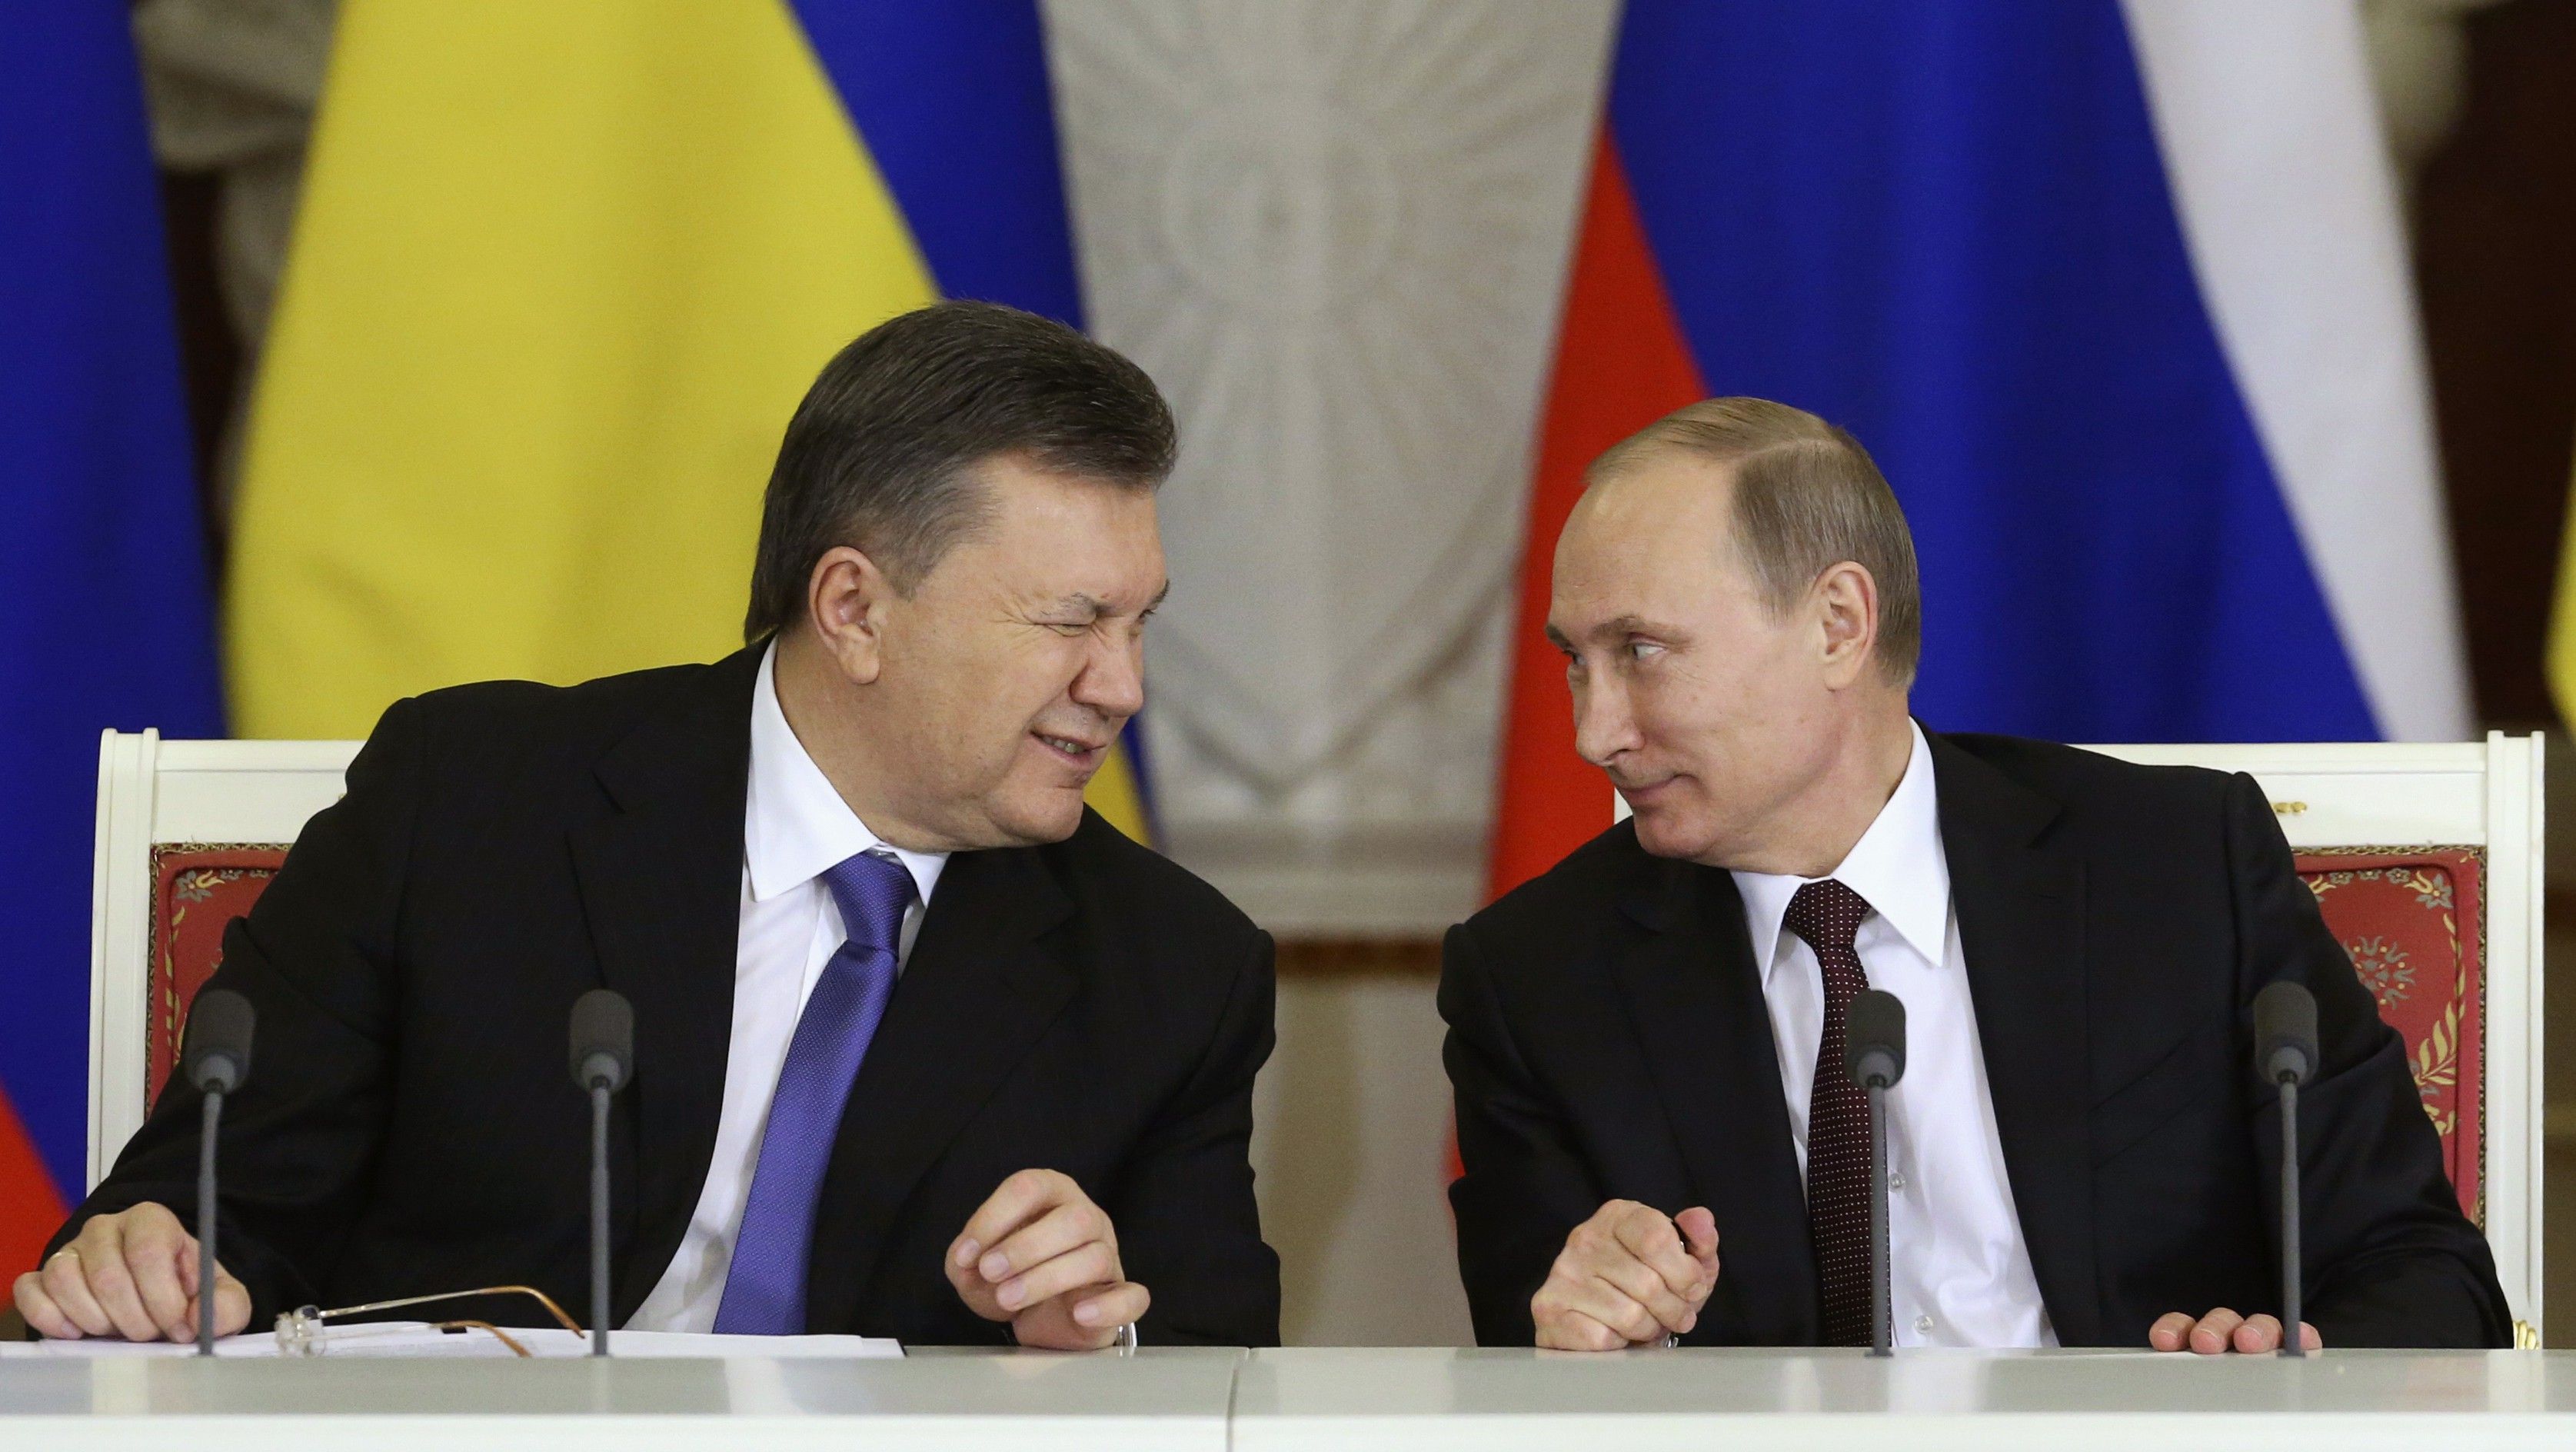 Administrația Poroșenko, amenințată cu formarea unui guvern ucrainean în exil la Moscova. Miniștii fugarului Ianukovyci vor să reînvie Ucraina